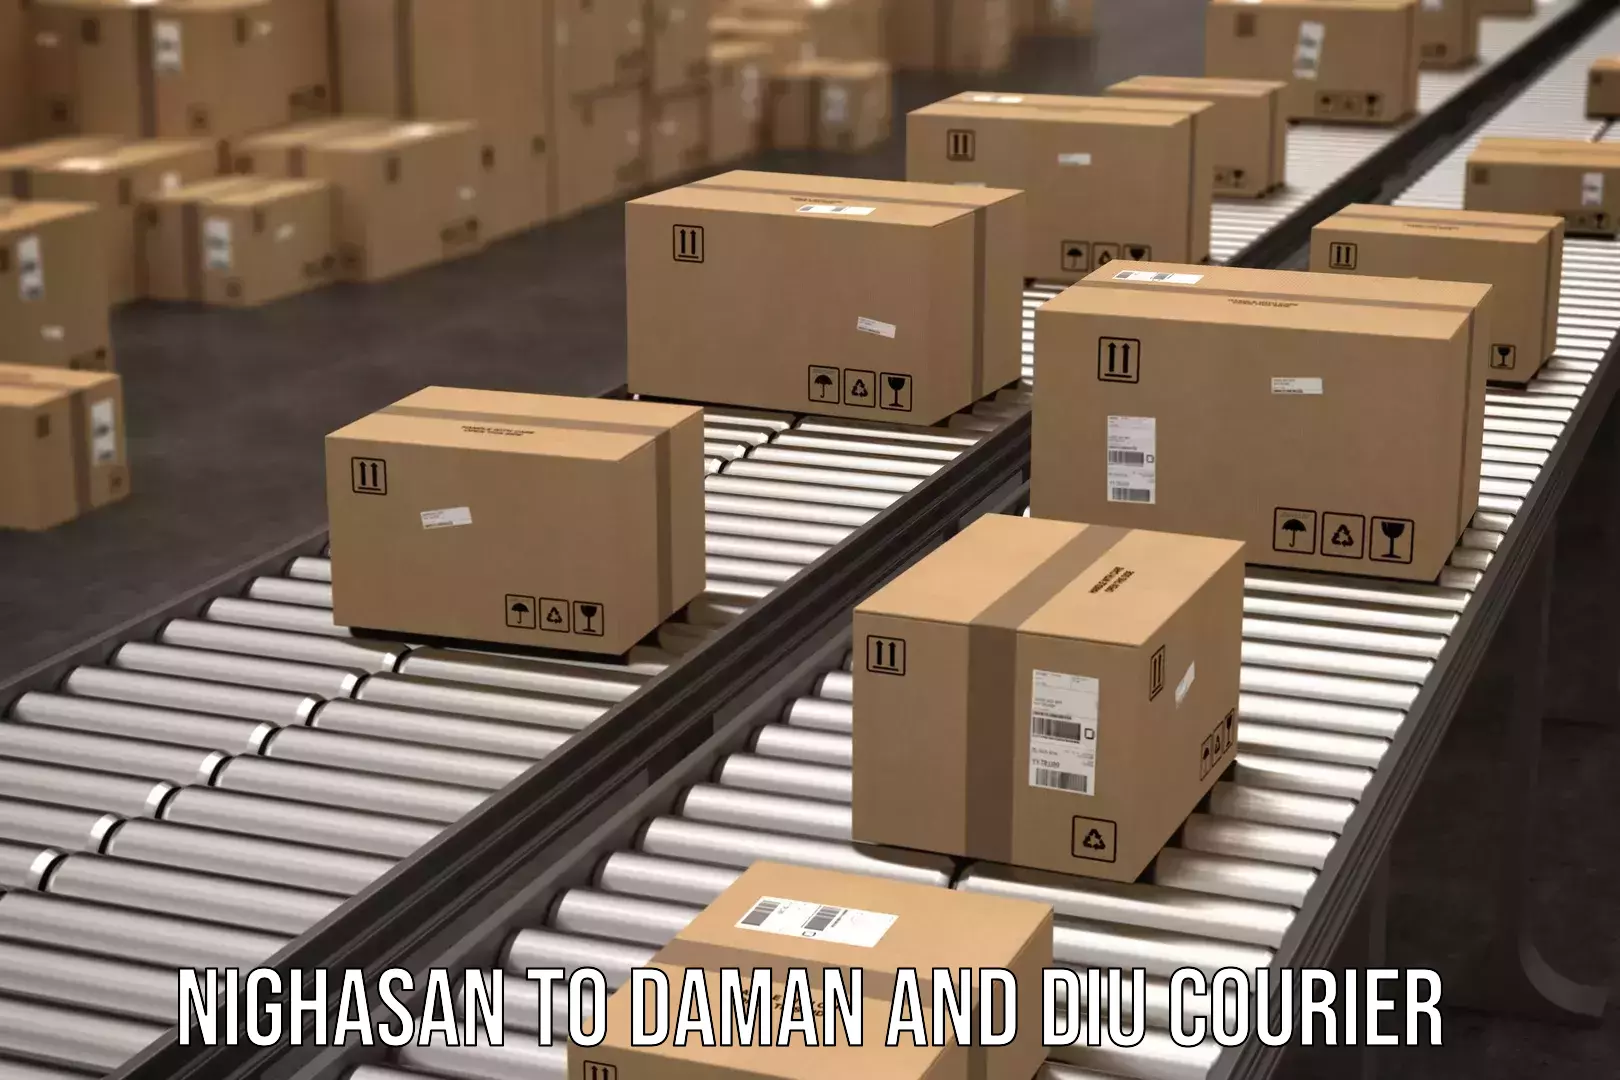 Express logistics providers Nighasan to Daman and Diu